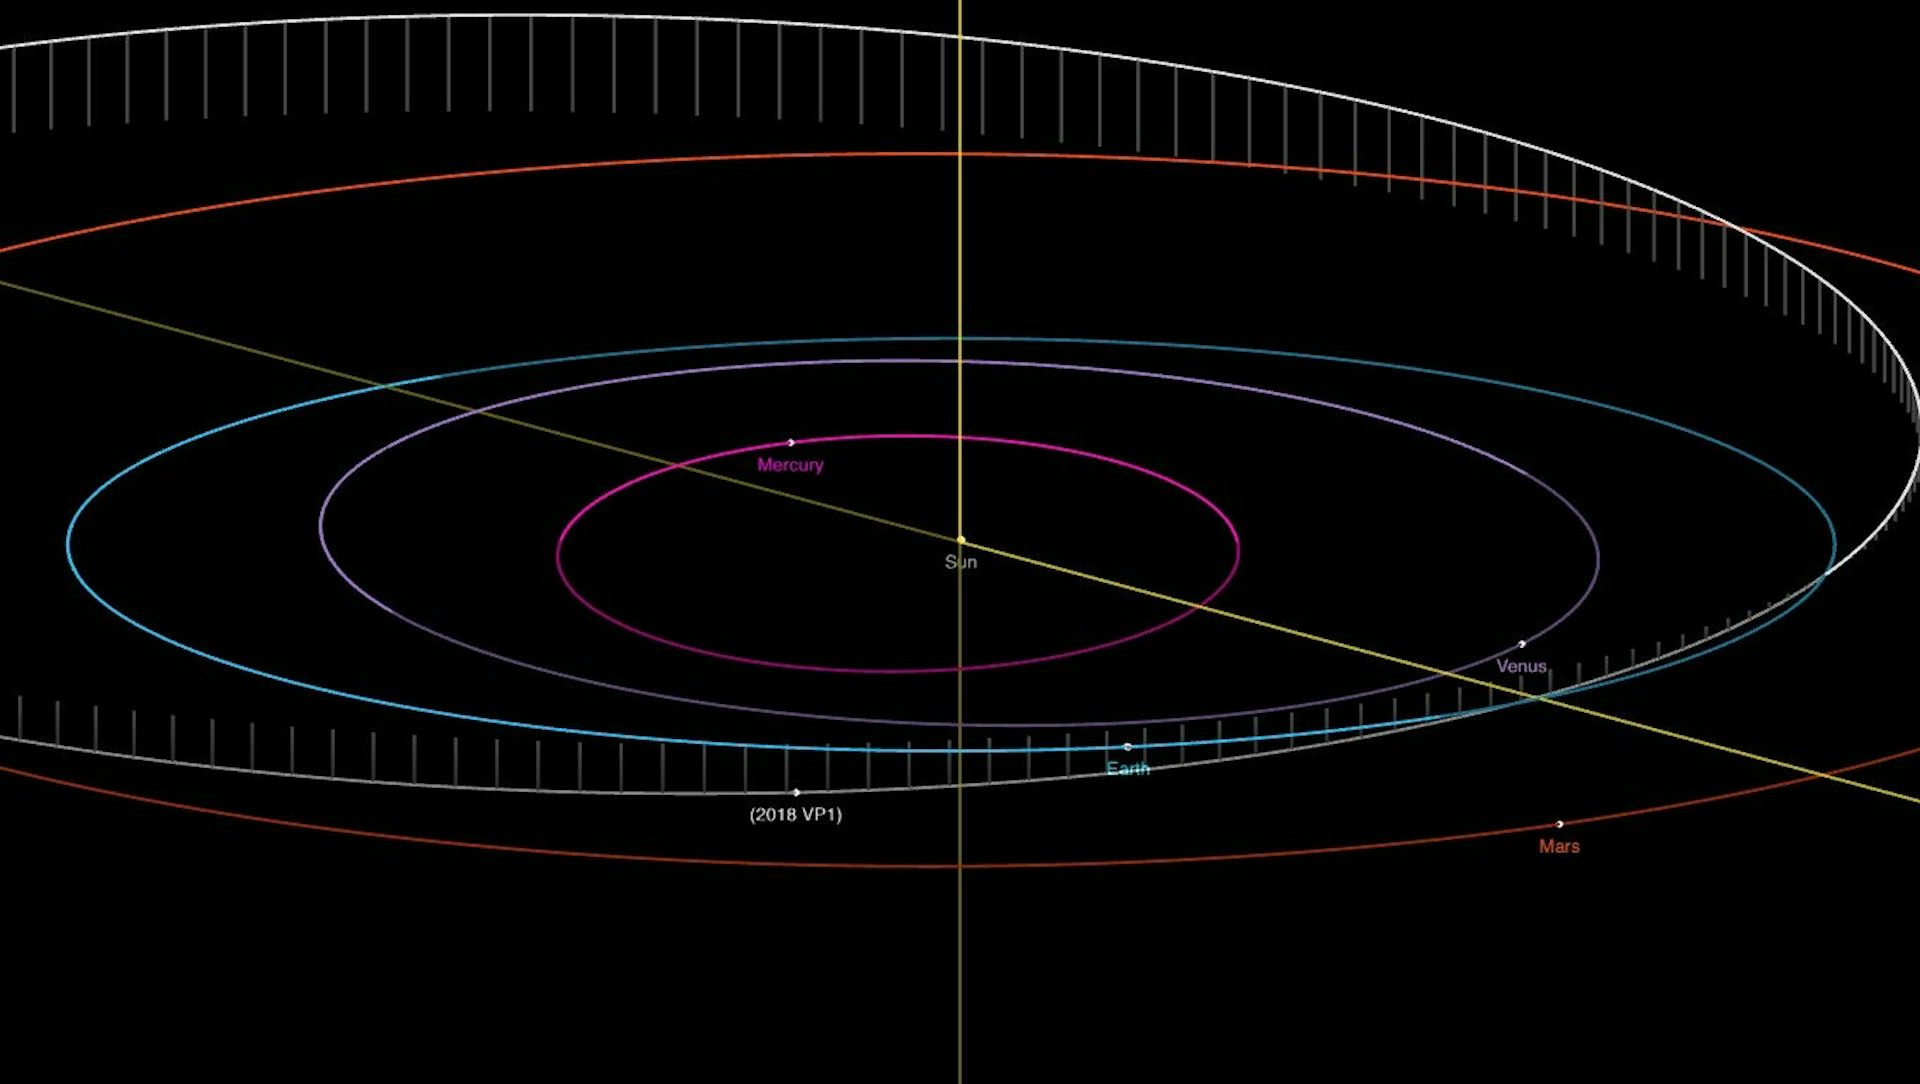 Diagramma che mostra le orbite che si intersecano dell'asteroide 2018 VP₁ e della Terra.